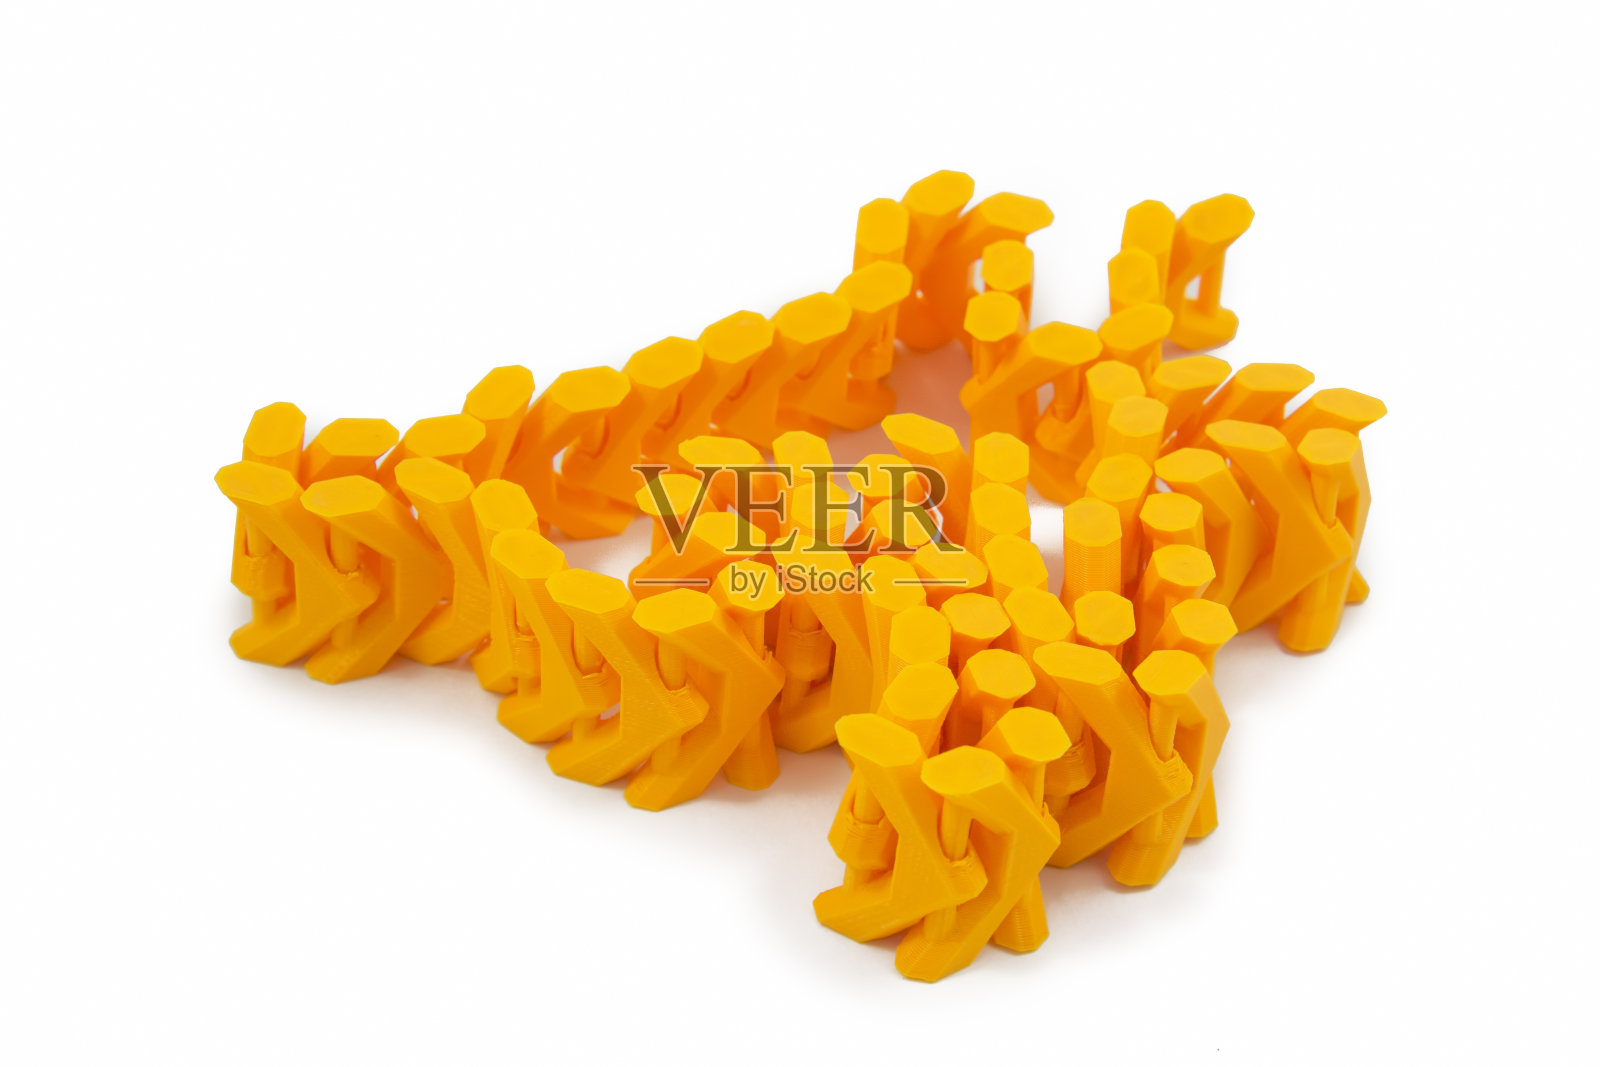 用3D打印机打印的橙色链状物体照片摄影图片